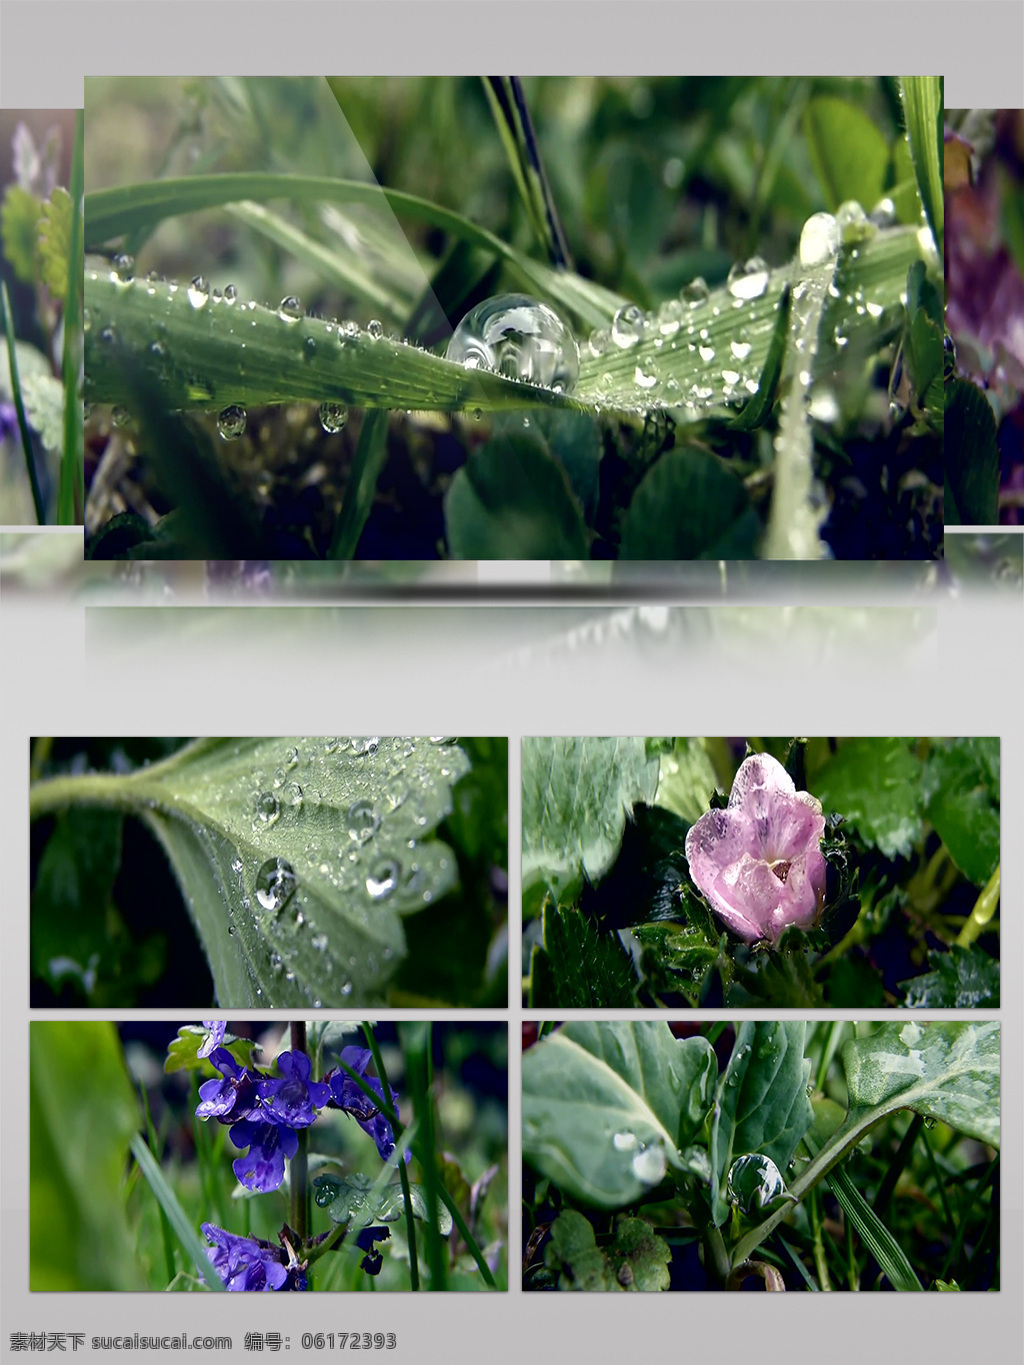 雨季 雨 后 花朵 嫩芽 水滴 清新 生机 小清新 绿色 雨后 春雨 春意